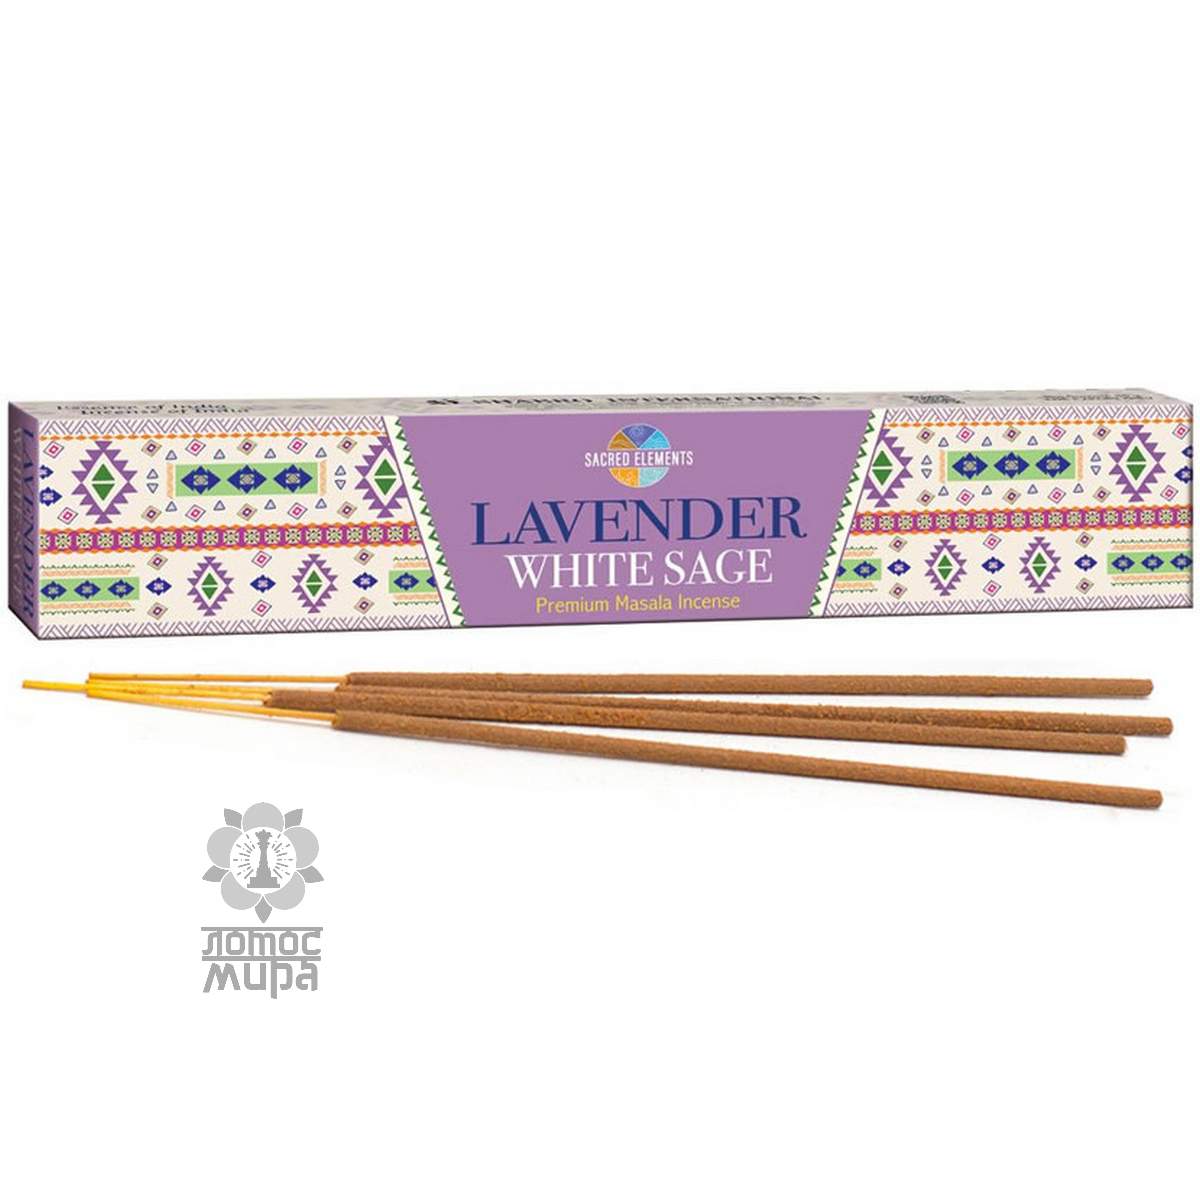 Lavender White Sage 15g Sacred Elements